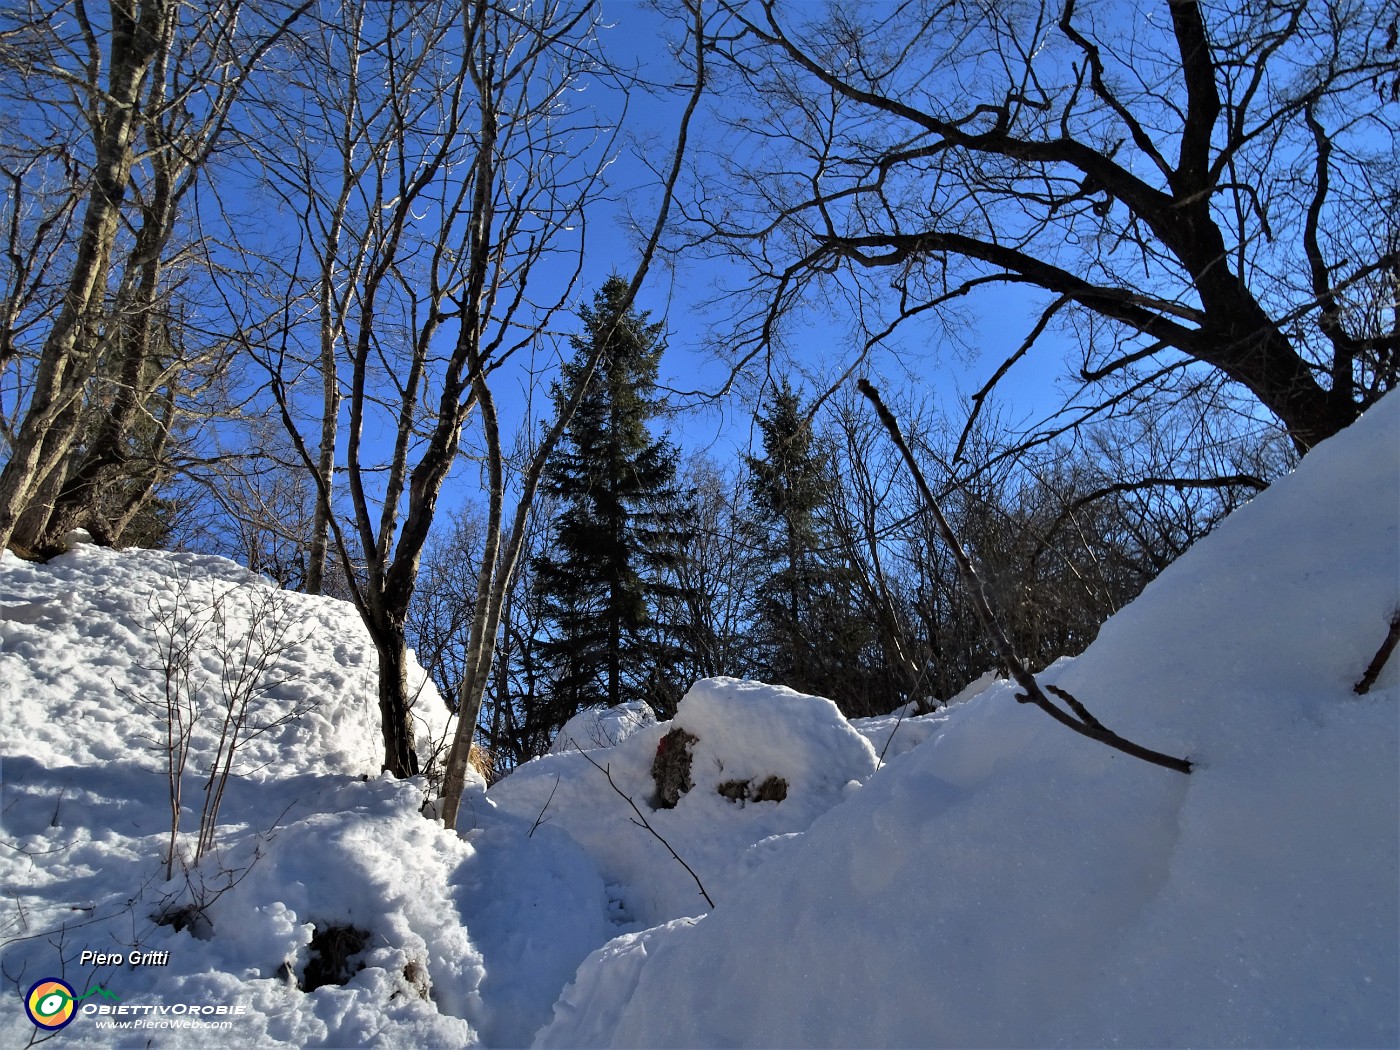 36 Pestando soffice neve dal Buco della Carolina al Monte Poieto sul sent. 537.JPG